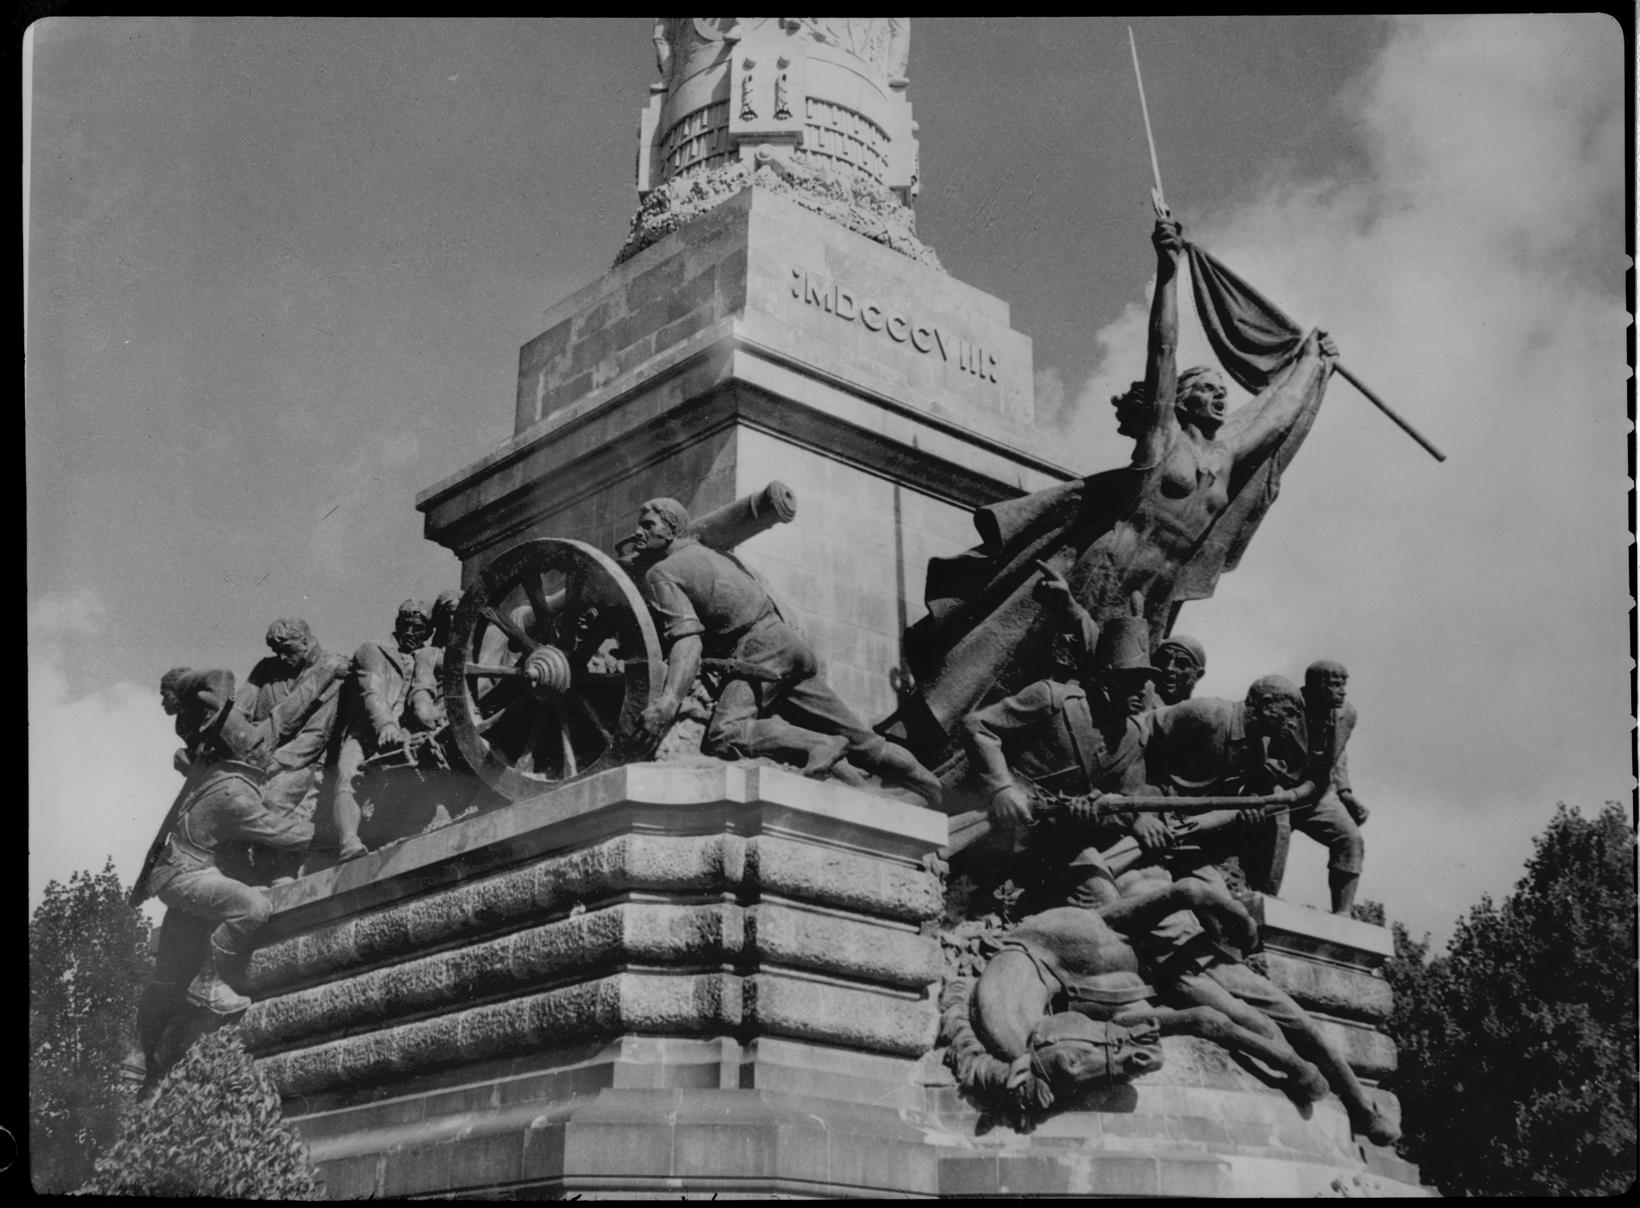 Monumento da Guerra Peninsular